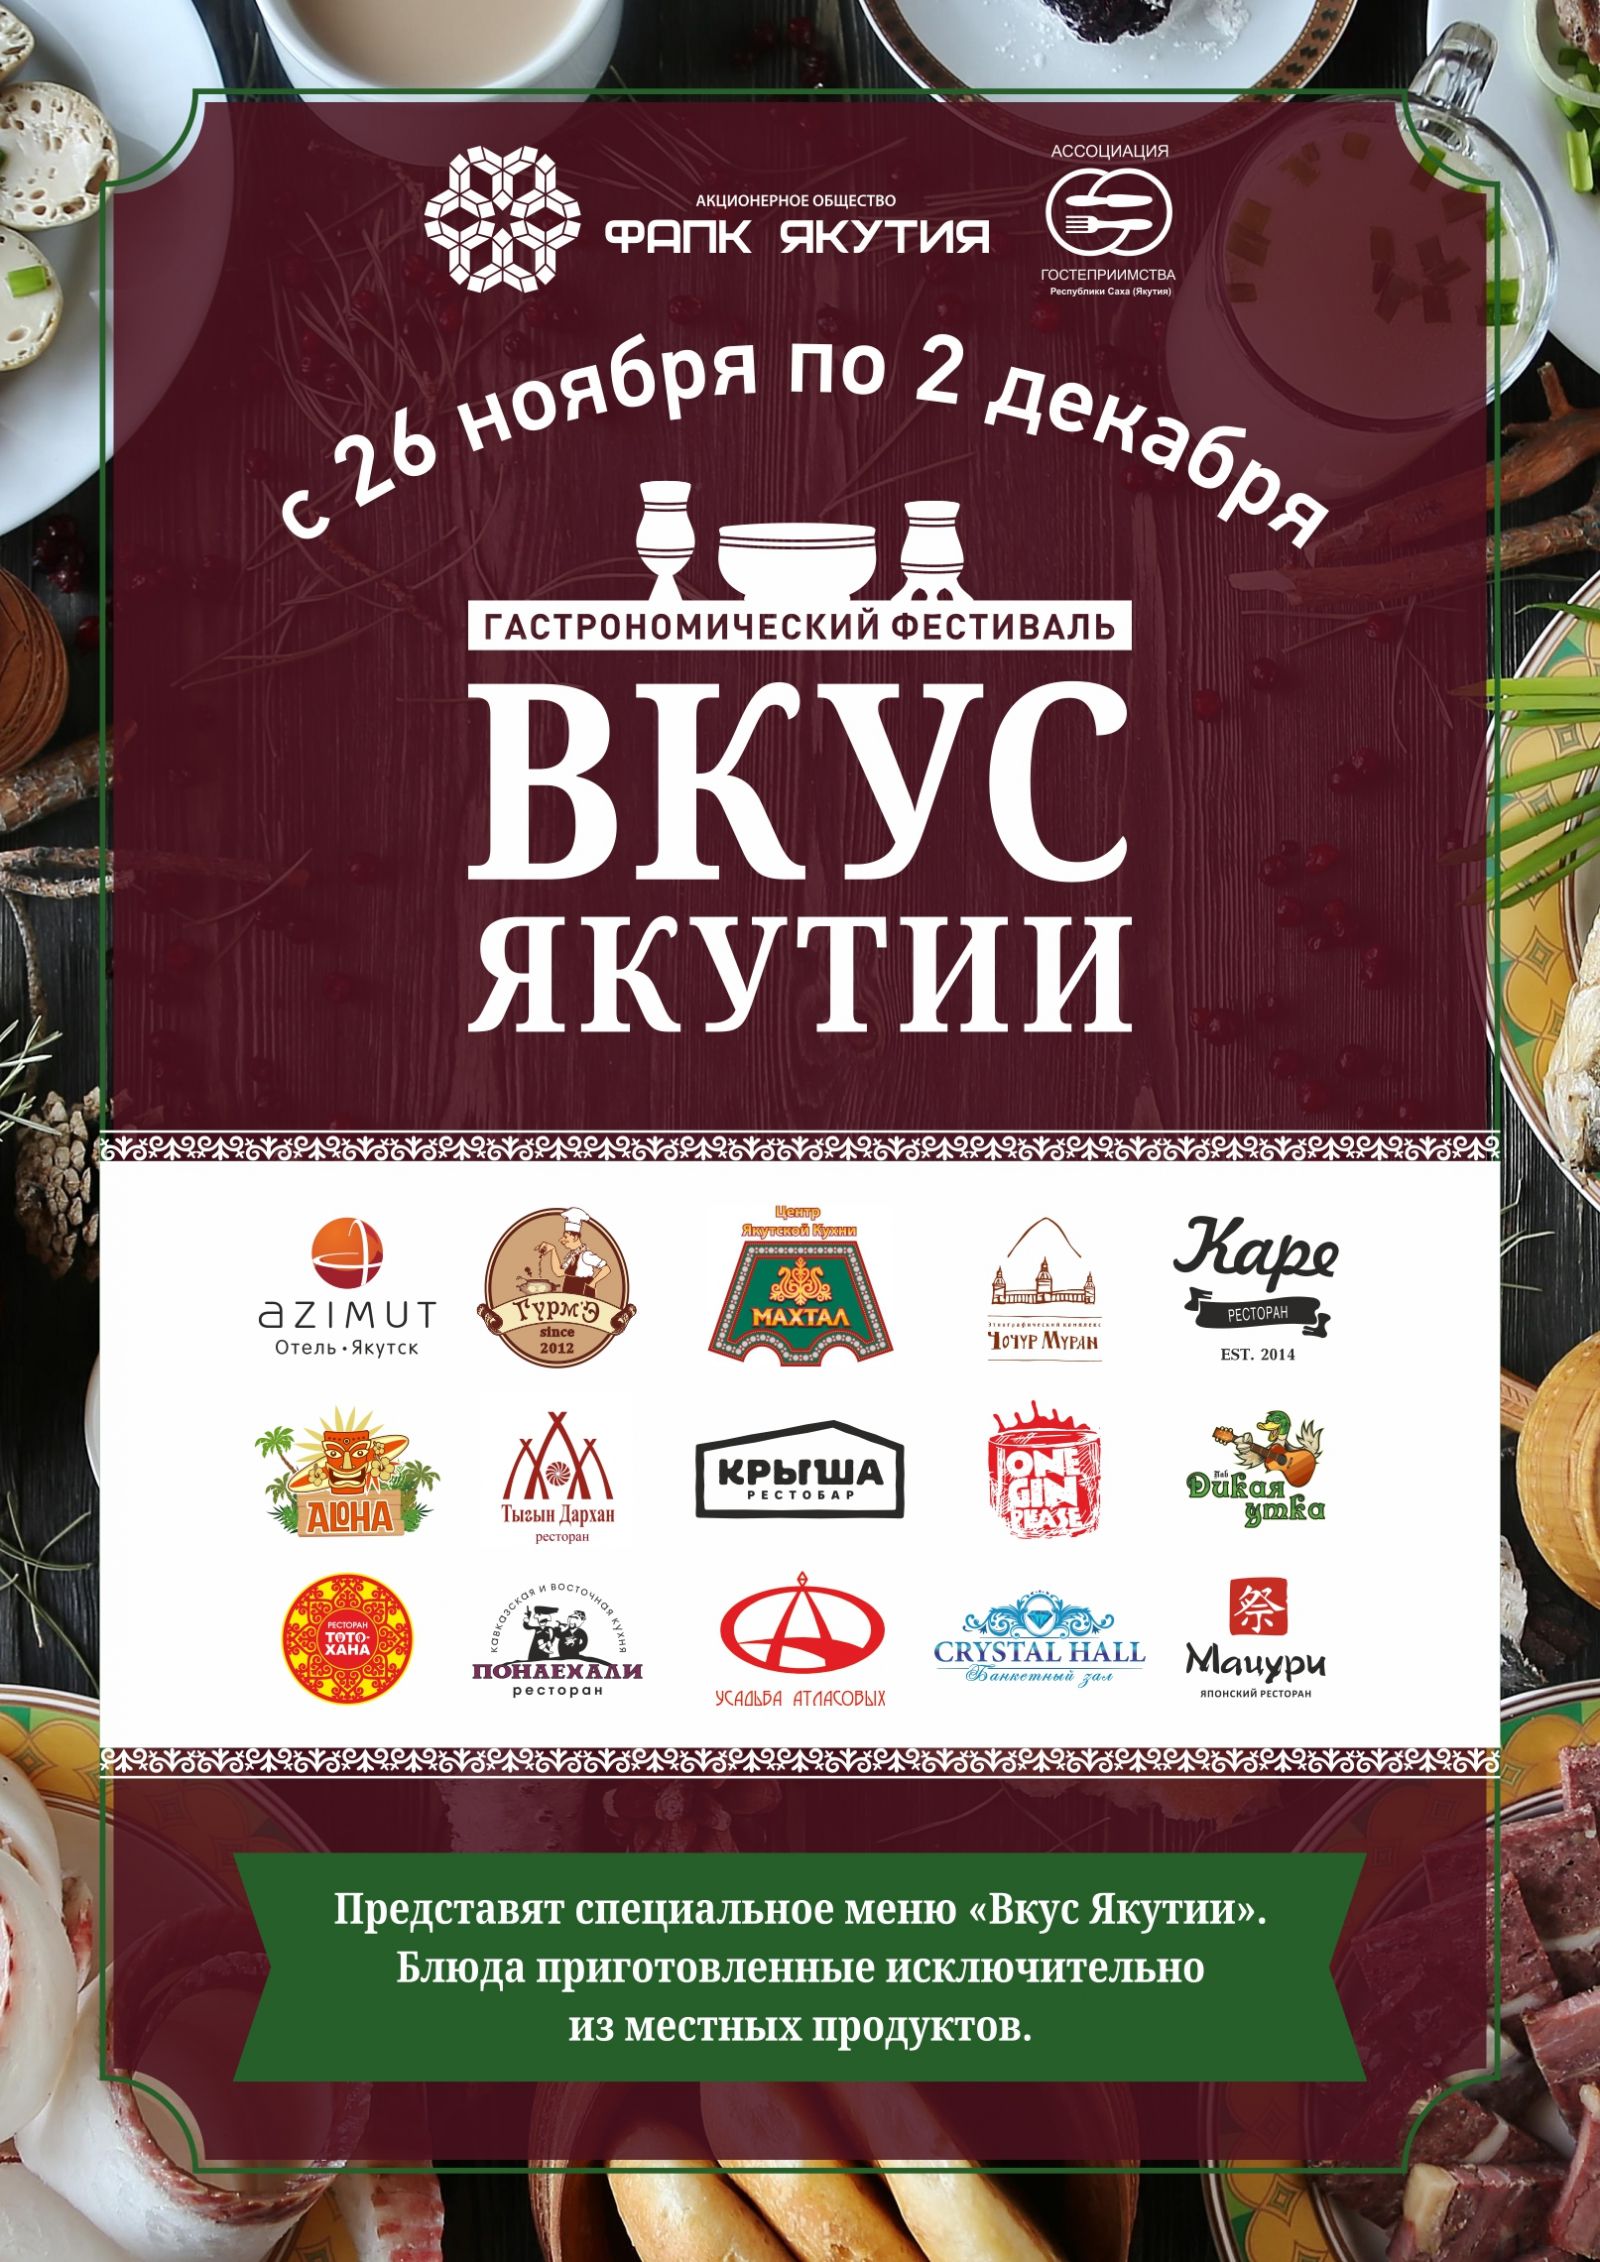 Кухни мира будут представлены на фестивале «Путешествие за вкусом» 